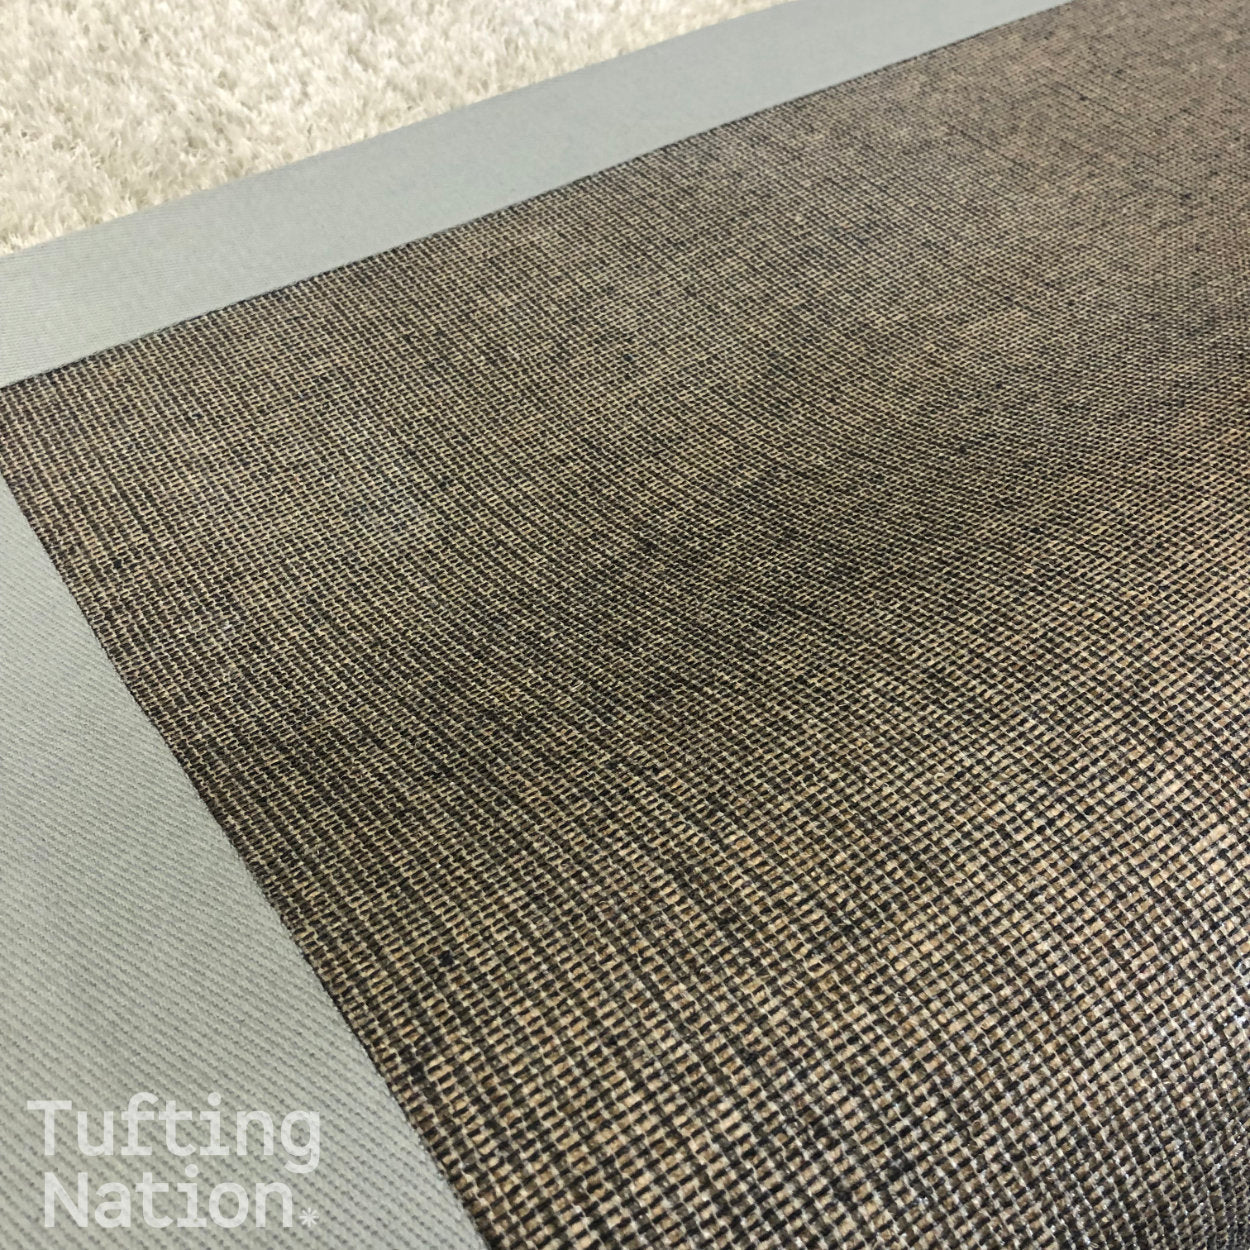 Carpet Backing Adhesive